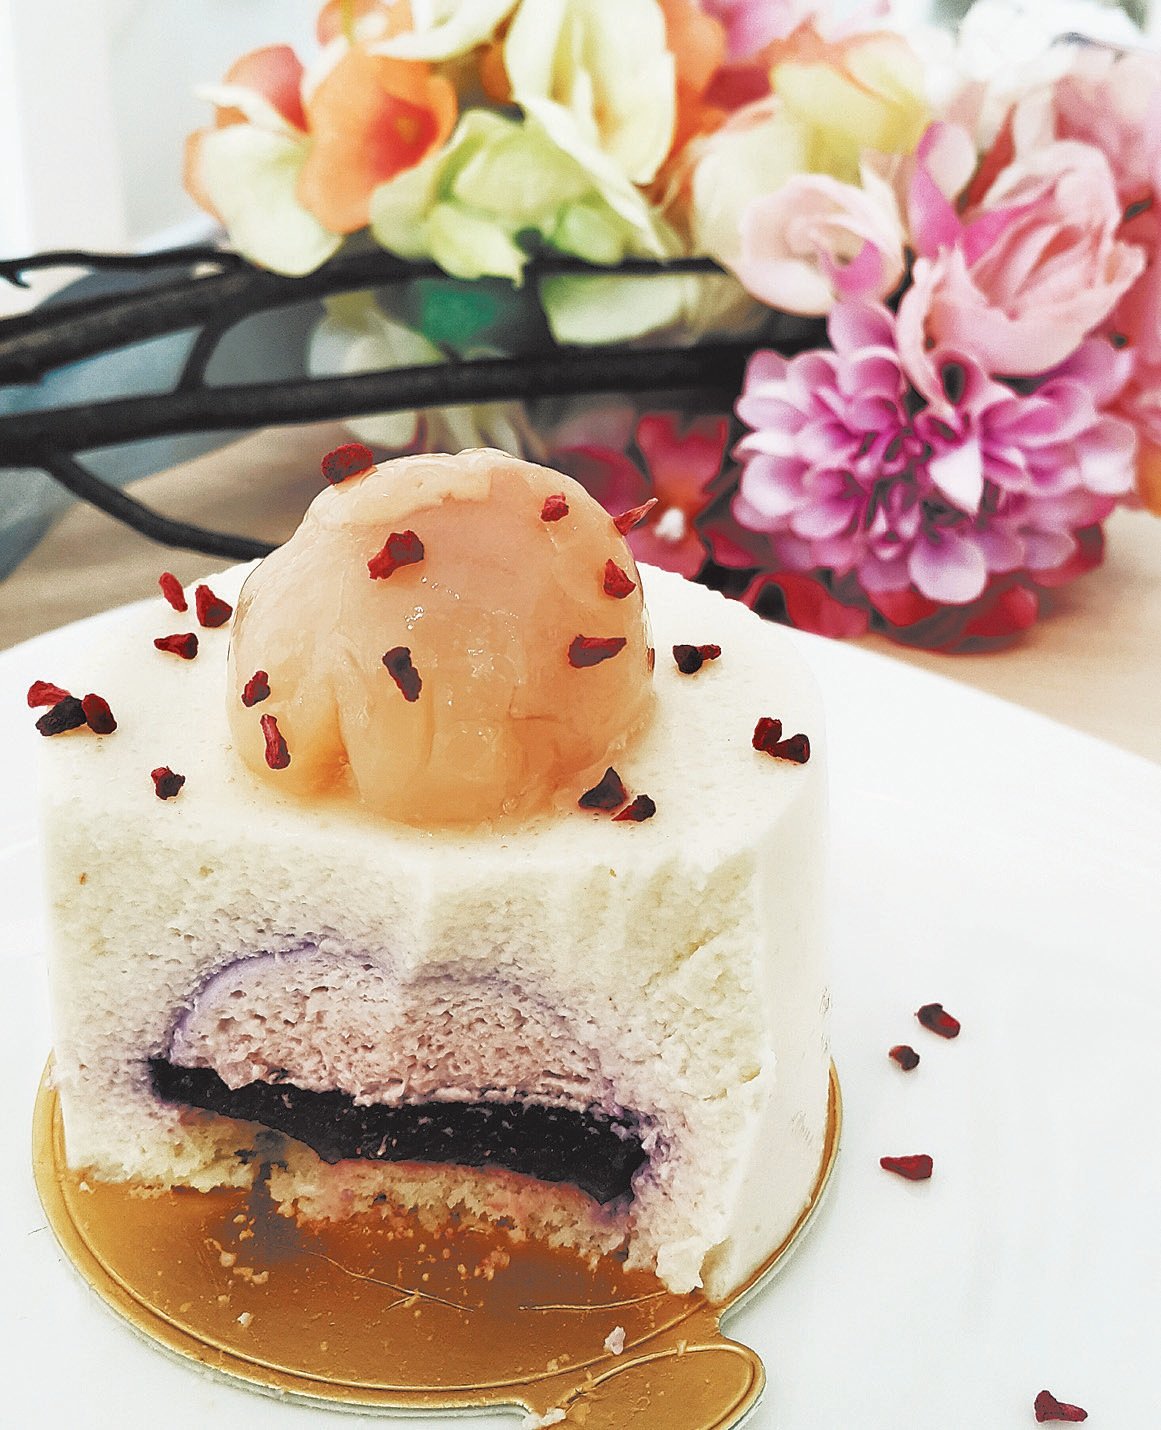 玫瑰覆盆子荔枝蛋糕（Ispahan）是以玫瑰为灵感的甜点，外观精致浪漫，每一勺都是饱满的甜蜜滋味。